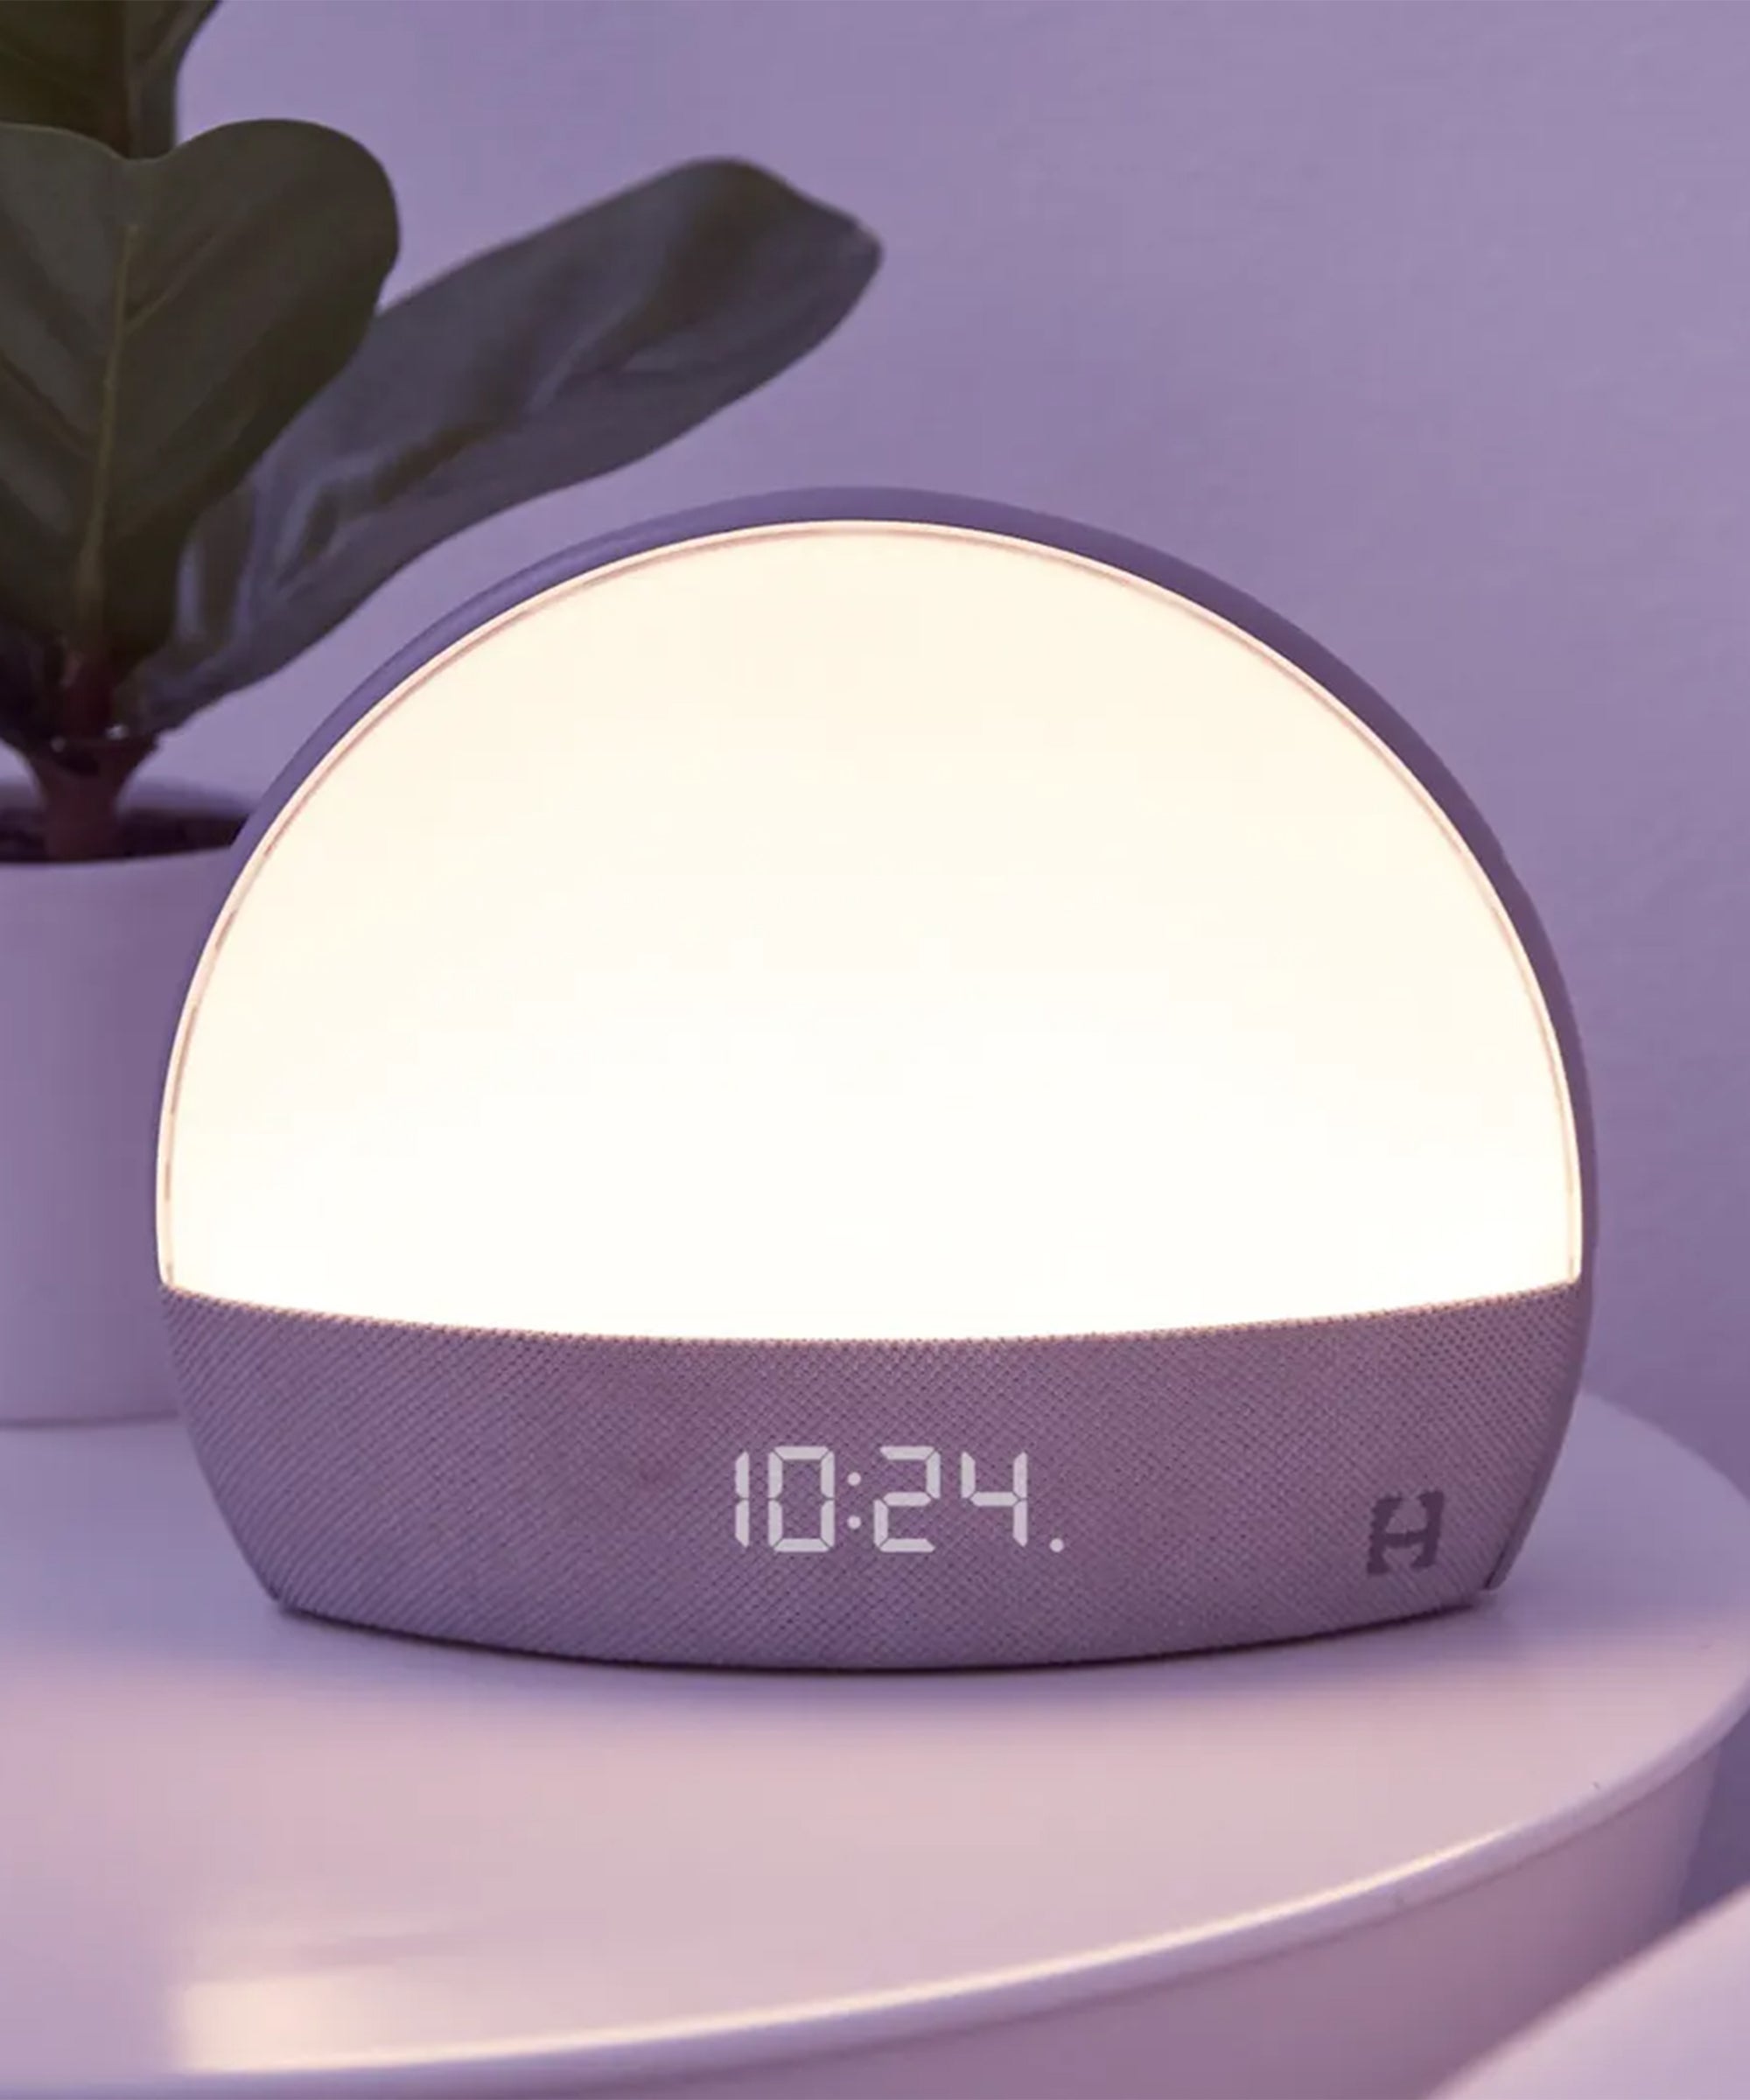 Infrarød spyd artilleri Best Sunrise Alarm Clocks With A Wake-Up Light Feature